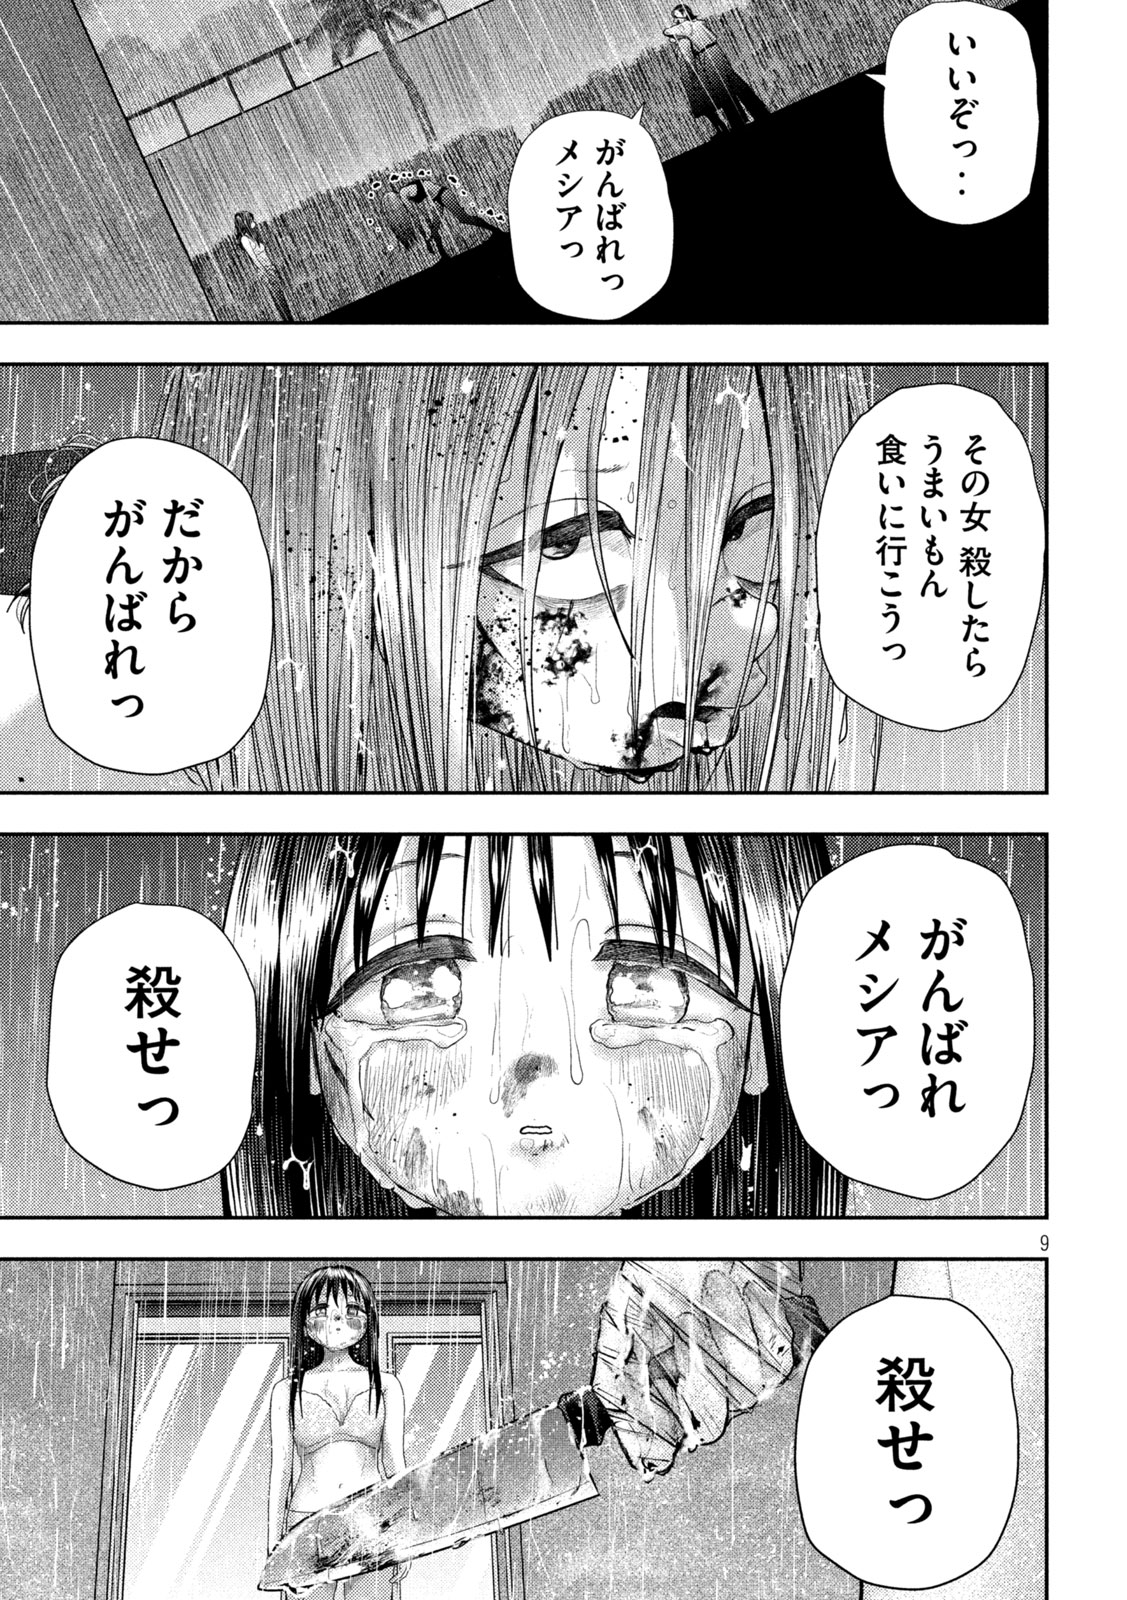 Nezumi no Koi - Chapter 25 - Page 9